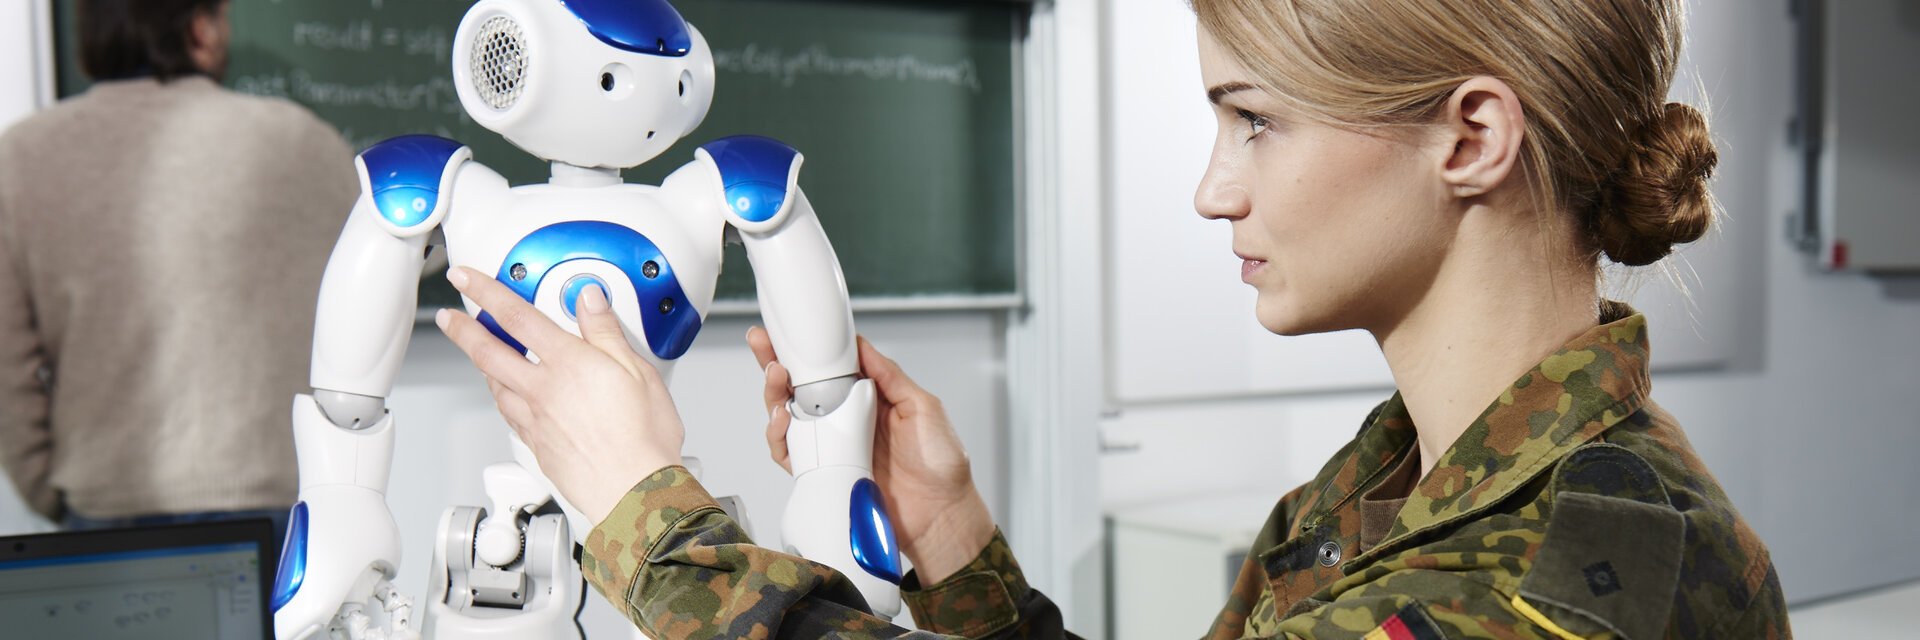 IT-Softwareentwicklerin in Uniform arbeitet an einem kleinen Roboter der UniversitÃ¤t der Bundeswehr